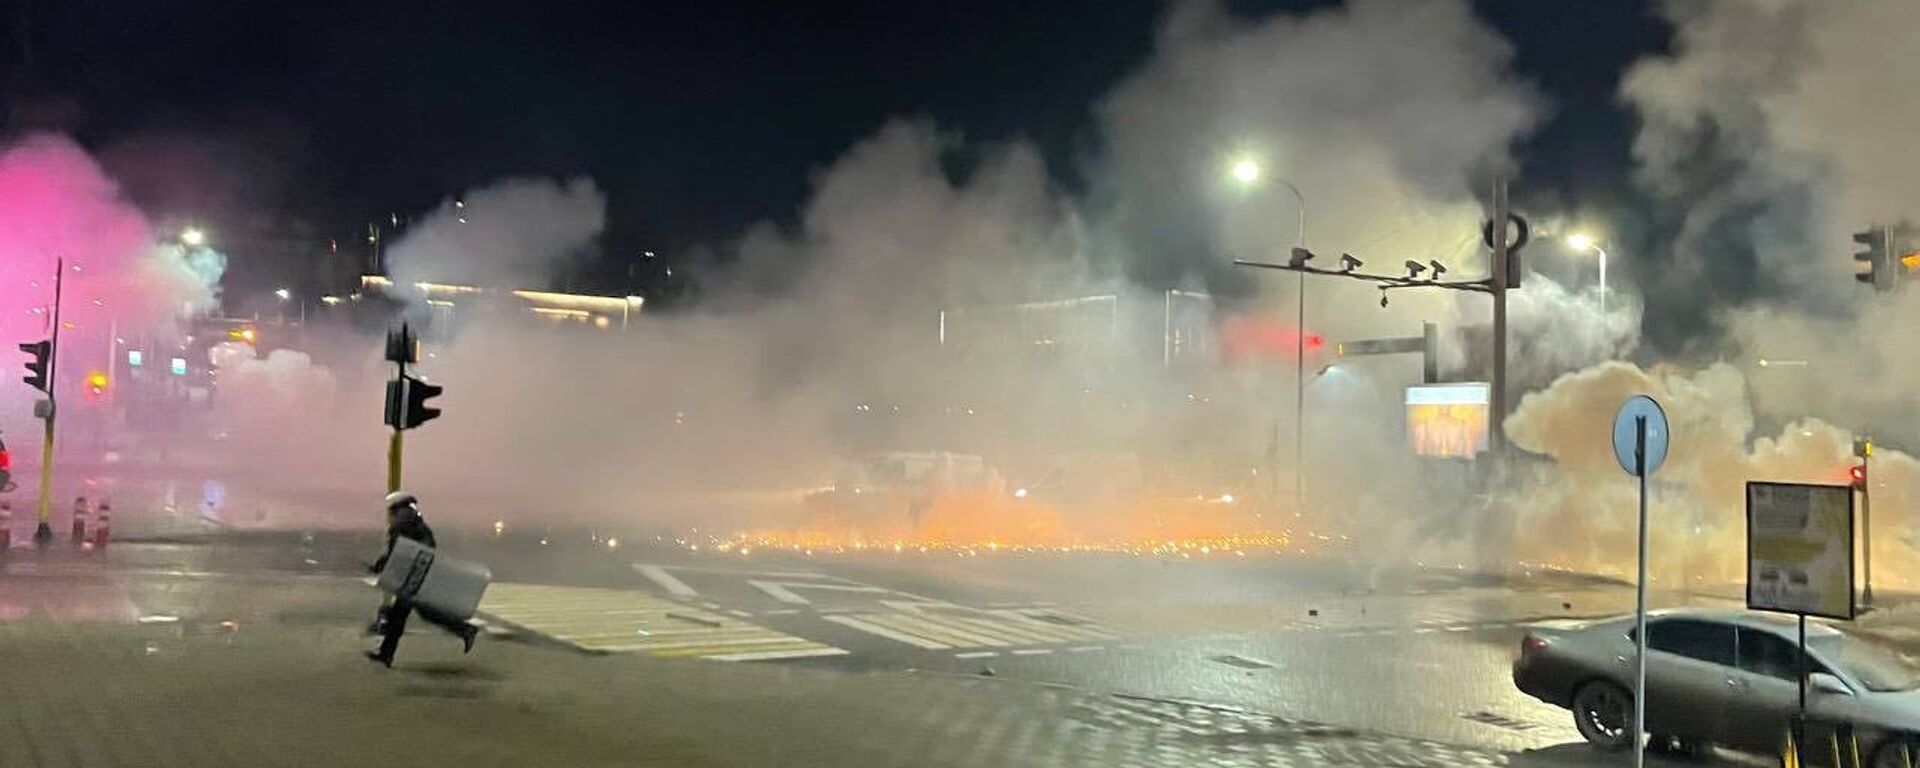 Полиция применила светошумовые гранаты и слезоточивый газ во время акции протеста против повышения цен на газ в Алма-Ате - Sputnik Армения, 1920, 05.01.2022